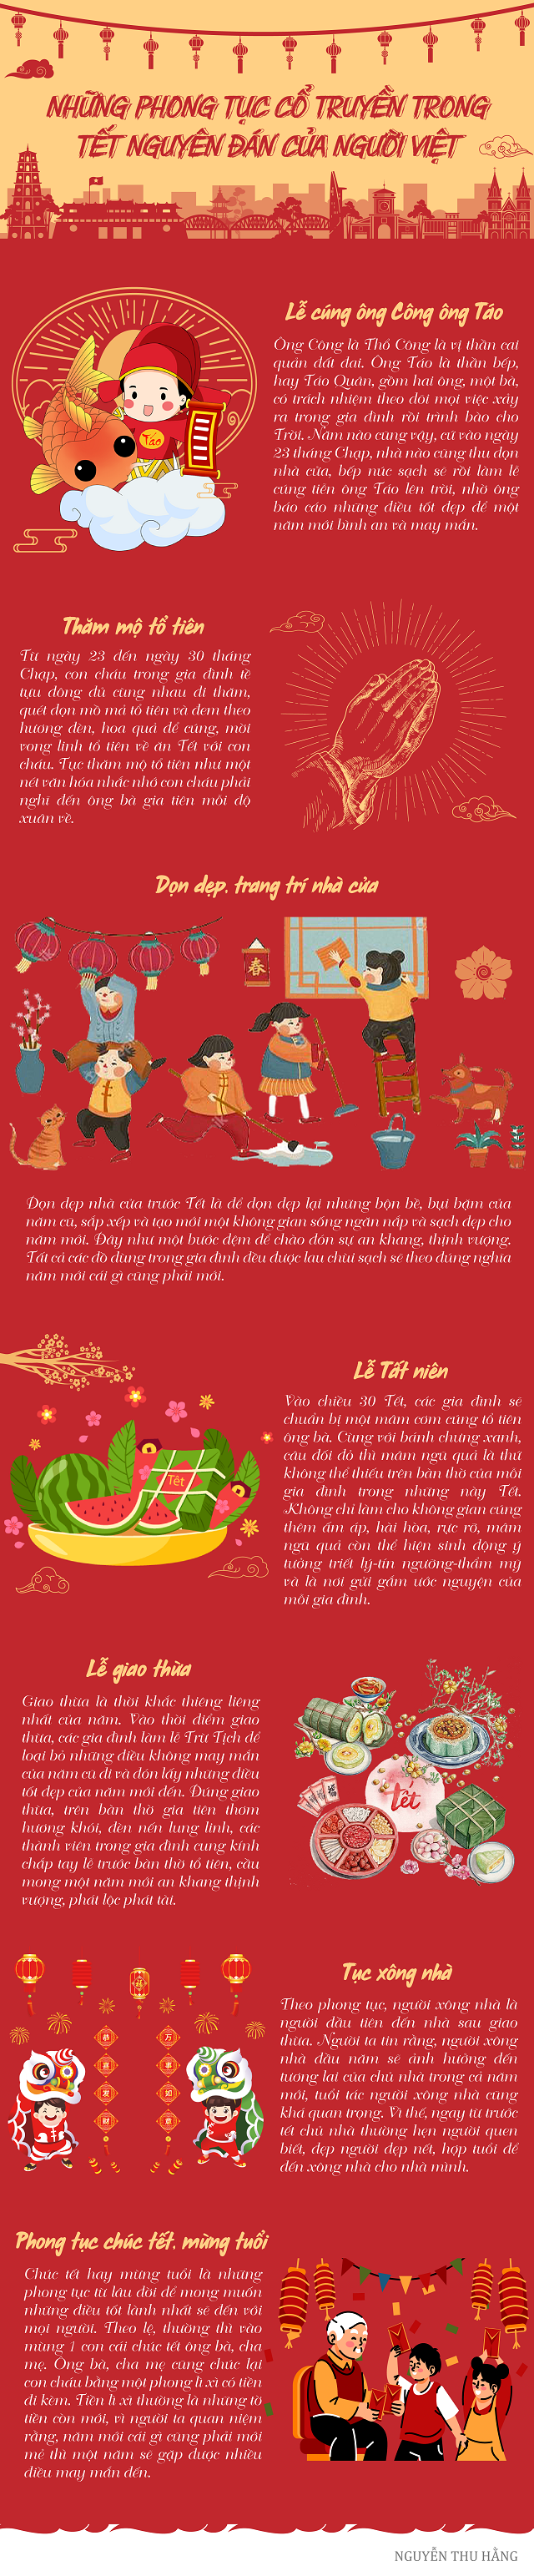 Những phong tục cổ truyền trong Tết Nguyên đán của người Việt - Ảnh 1